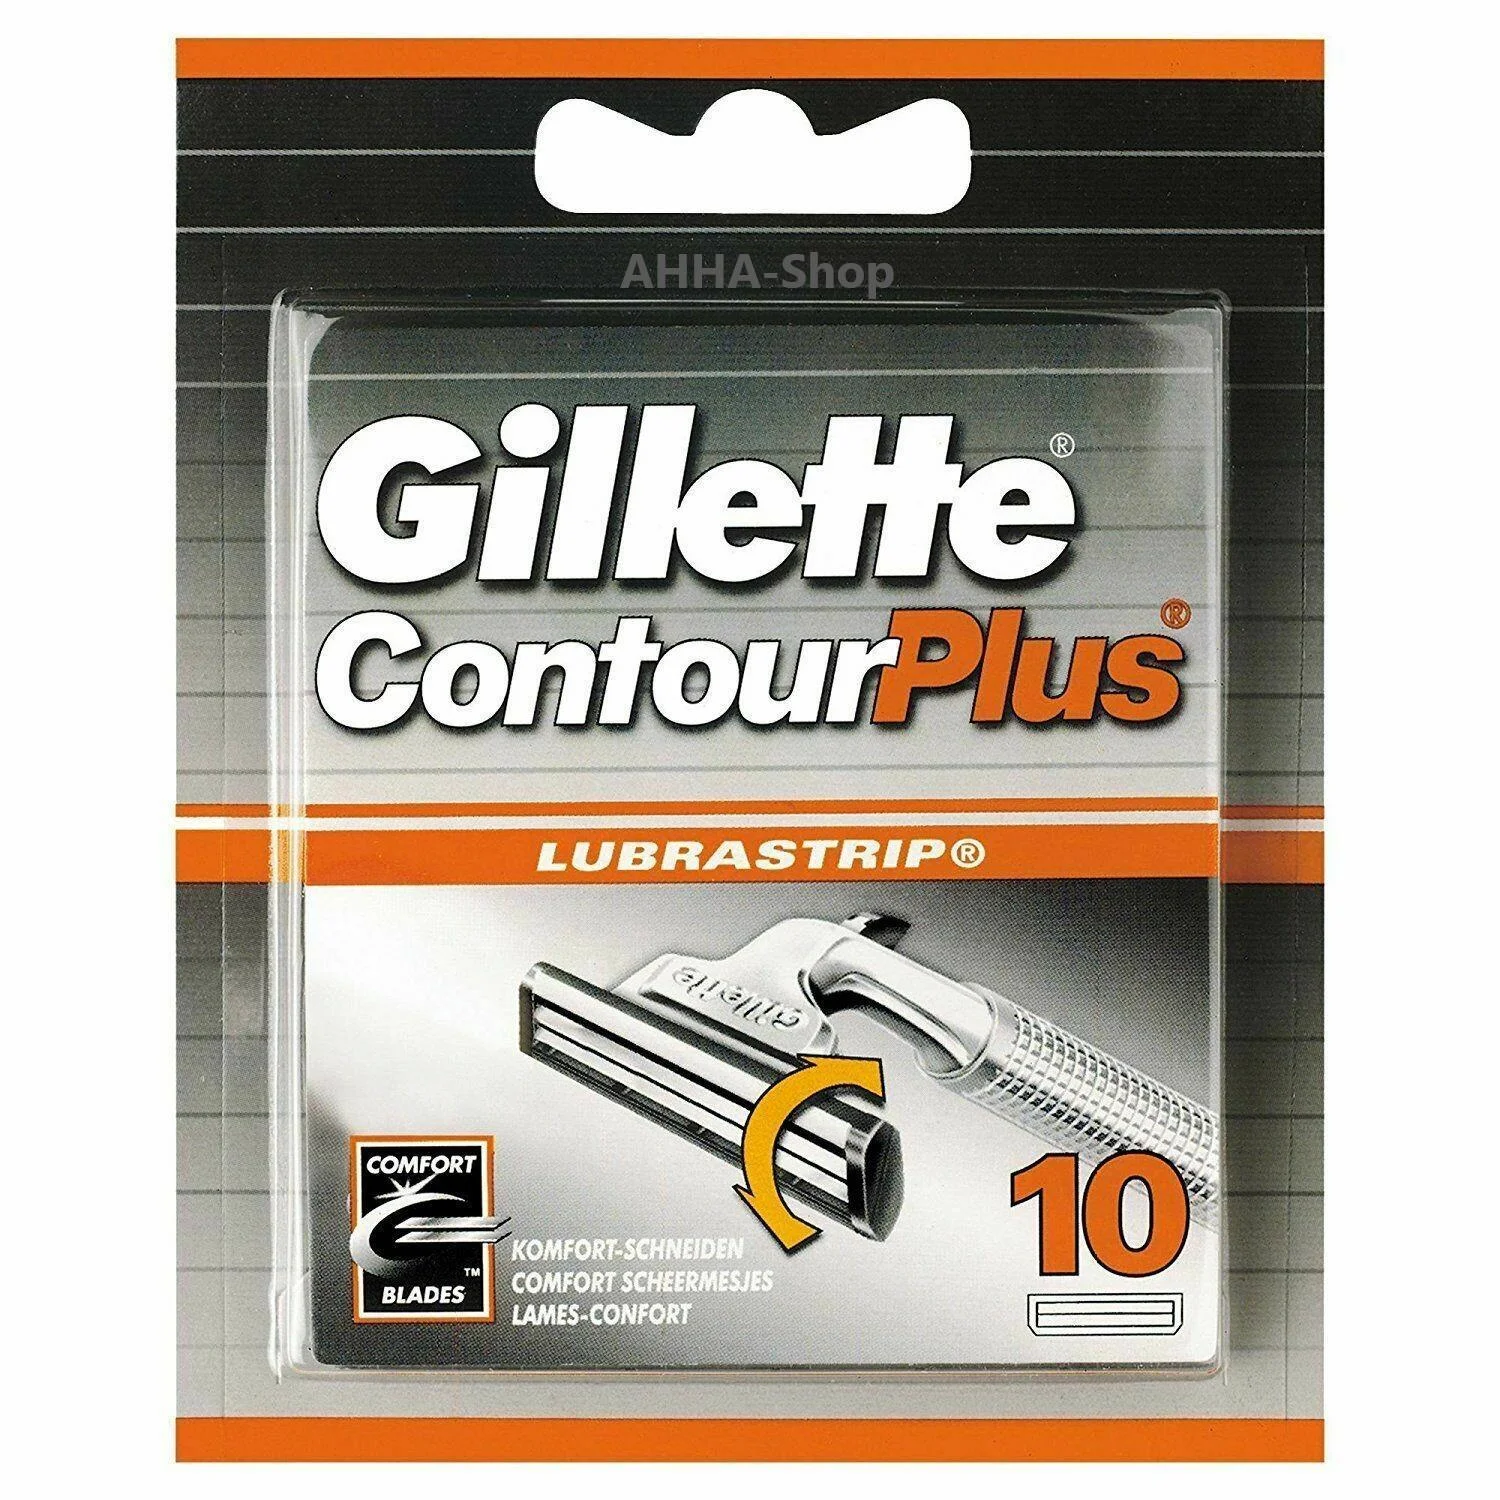 Gillette Contour Plus Rasierklingen, neu und OVP, 10 Stück